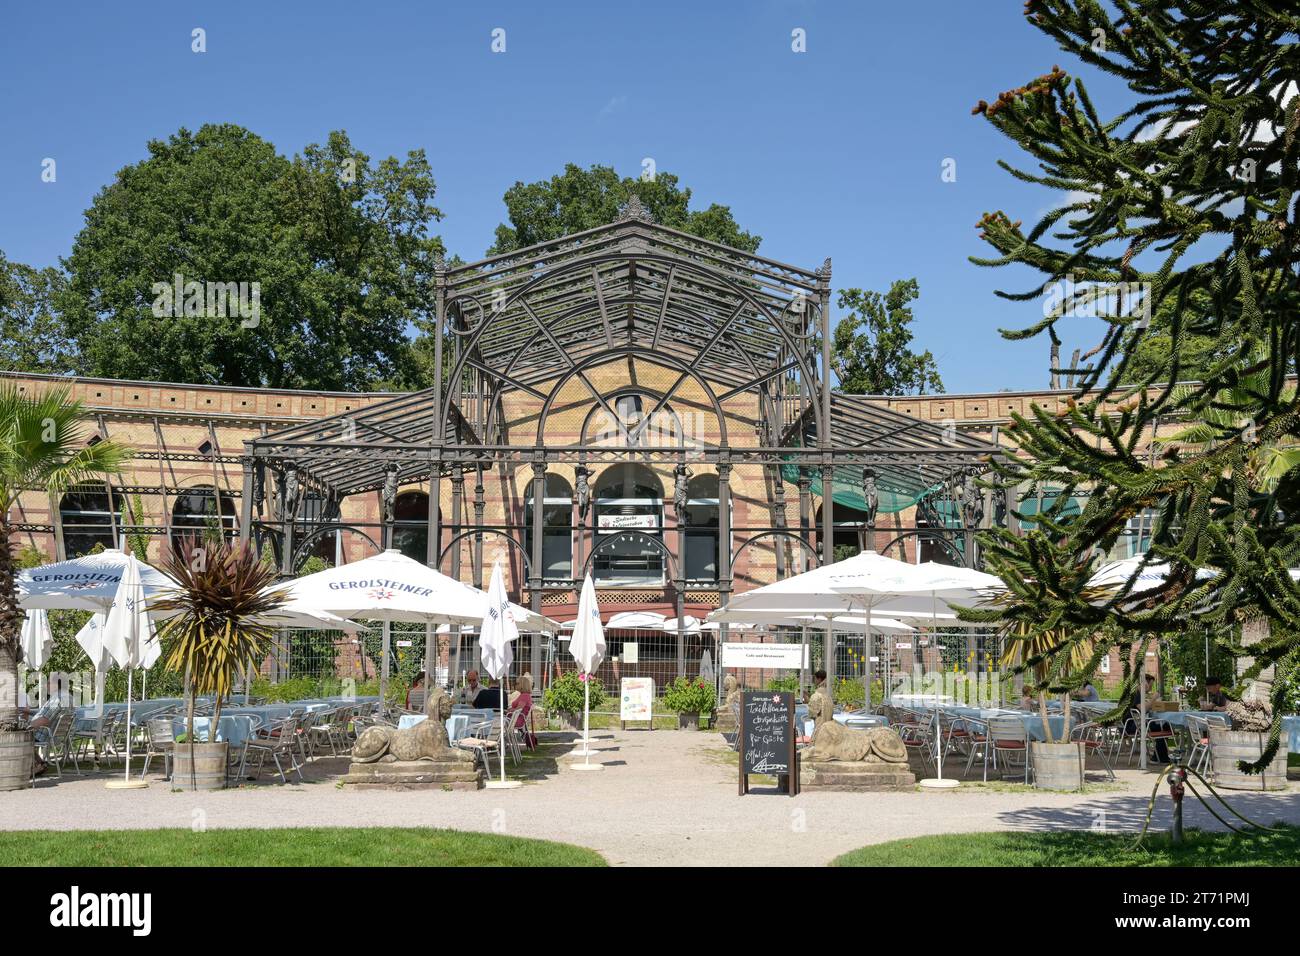 Badische Weinstuben, Botanischer Garten Karlsruhe, Hans-Thoma-Straße, Karlsruhe, Baden-Württemberg, Deutschland Stock Photo